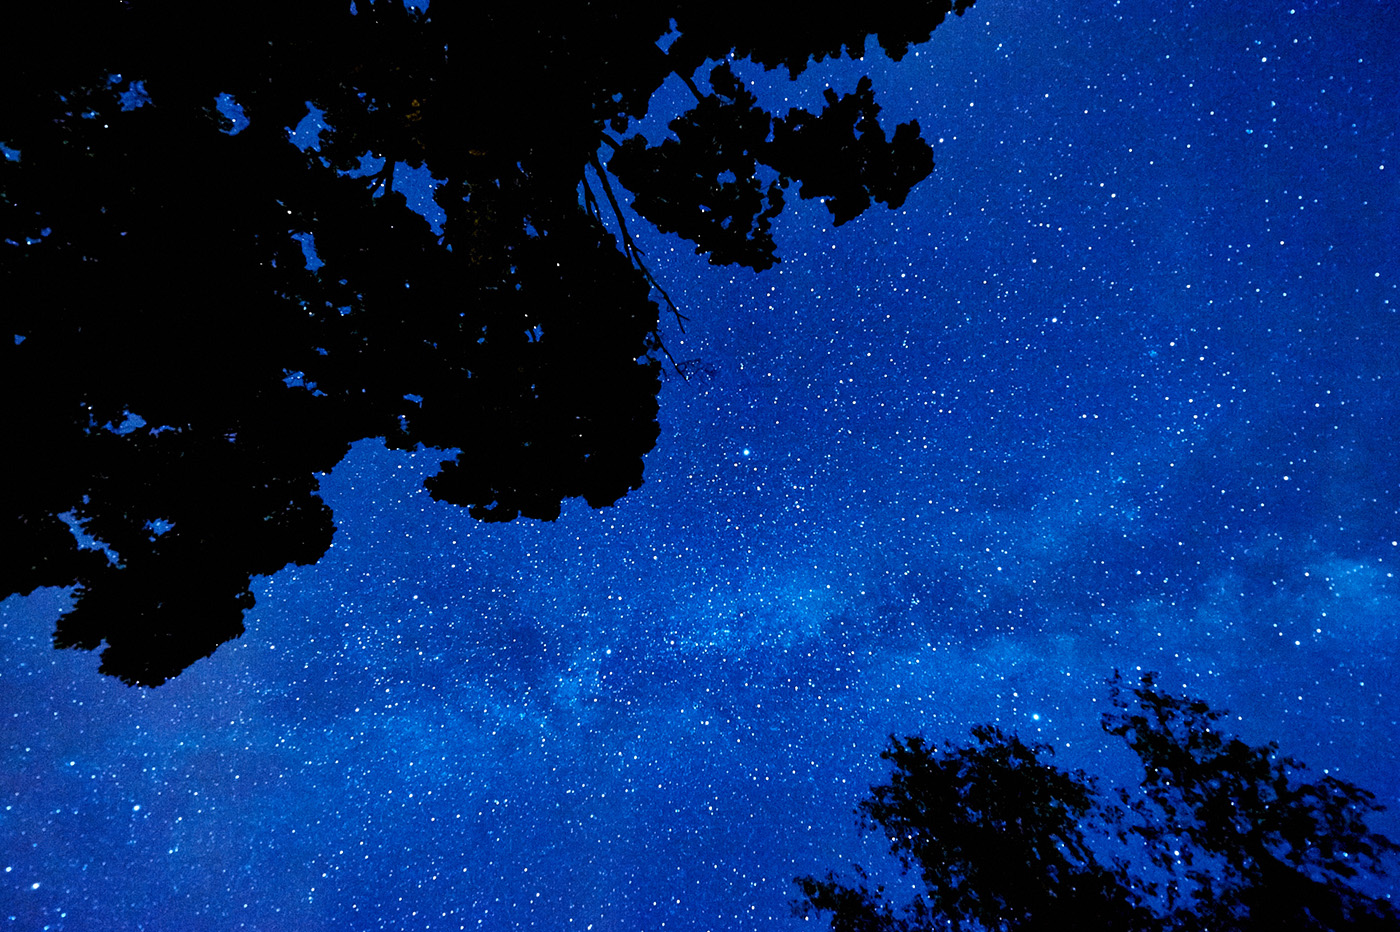 Milky Way and Night Sky, Hamilton, New York